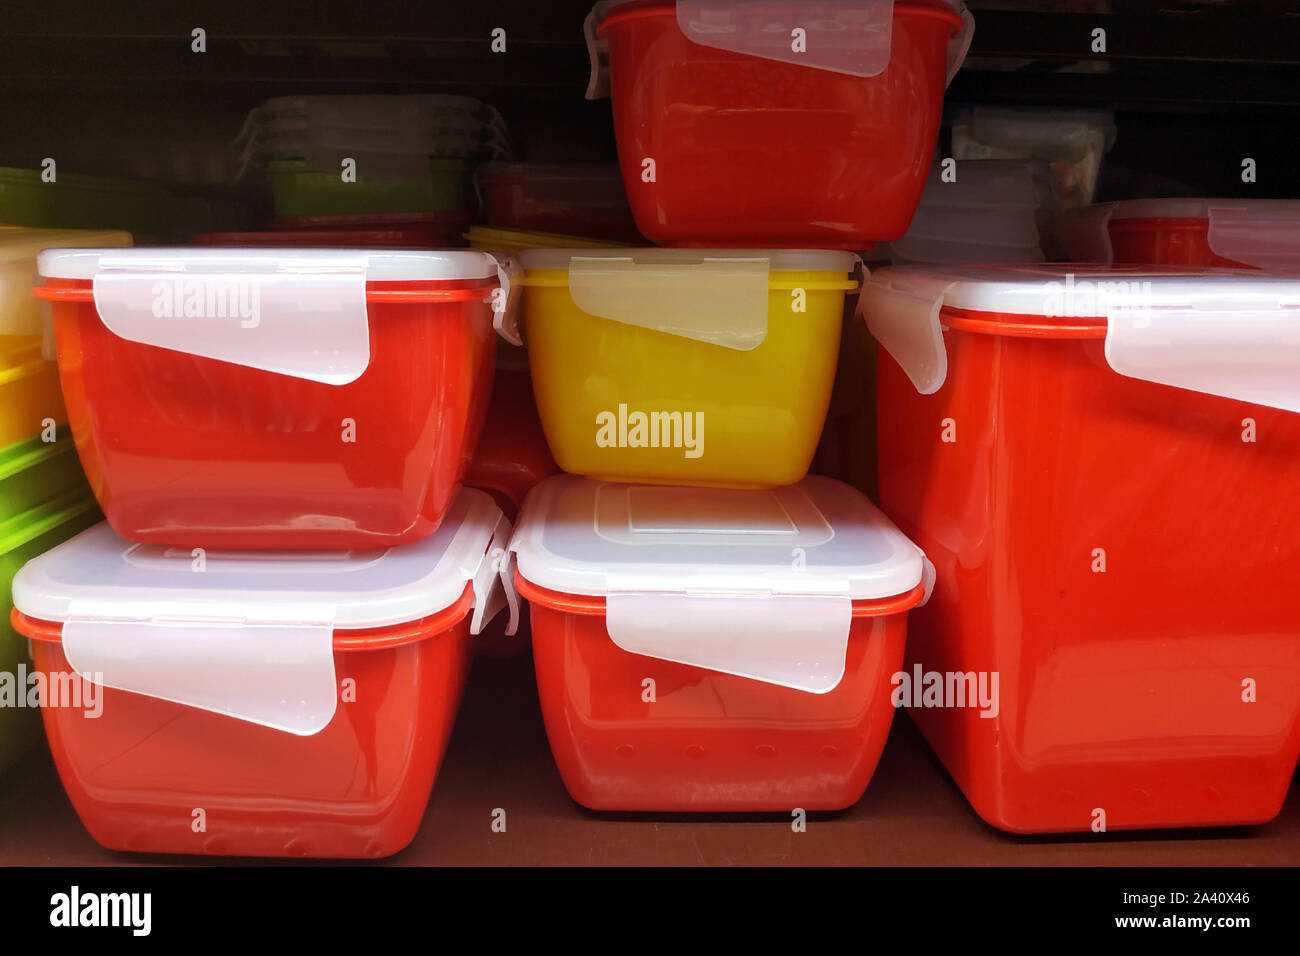 Los recipientes de comida con tapa hermética. Cajas especiales para almacenar alimentos y cocinados. Contenedores de plástico de diferentes tamaños en los estantes de la Fotografía de stock -